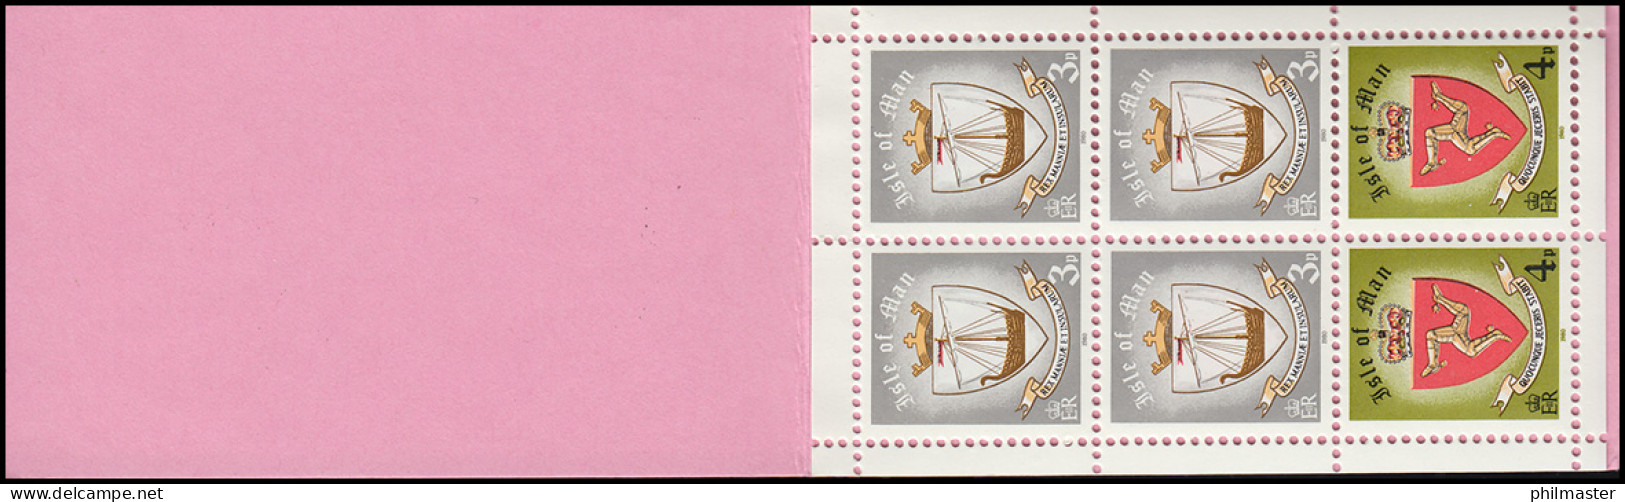 Isle Of Man Markenheftchen 7, Freimarken Wappen 40 Pence 1980, ** Postfrisch - Man (Insel)